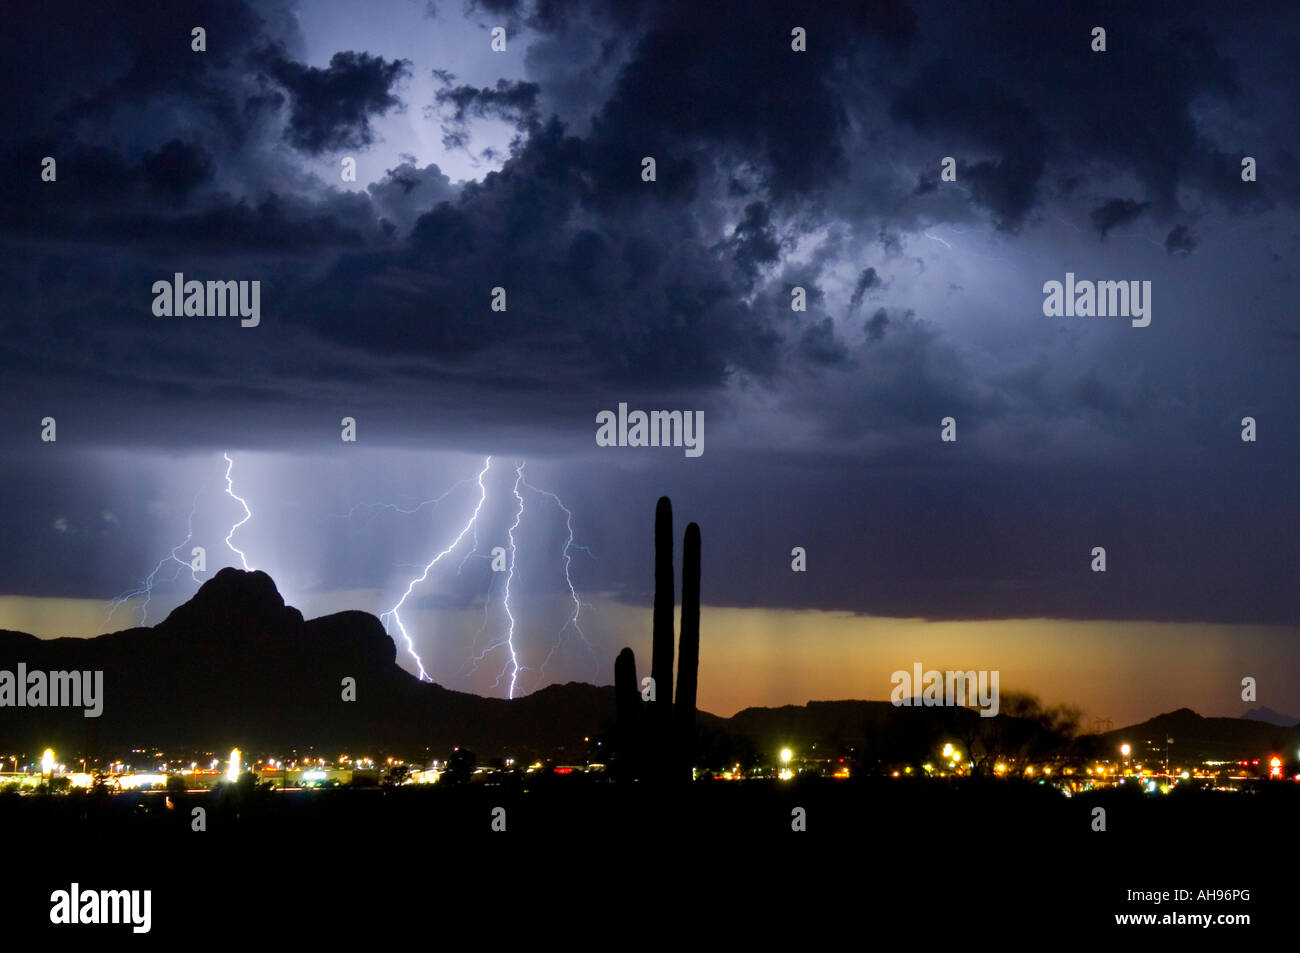 Lightning storm over desert Stock Photo